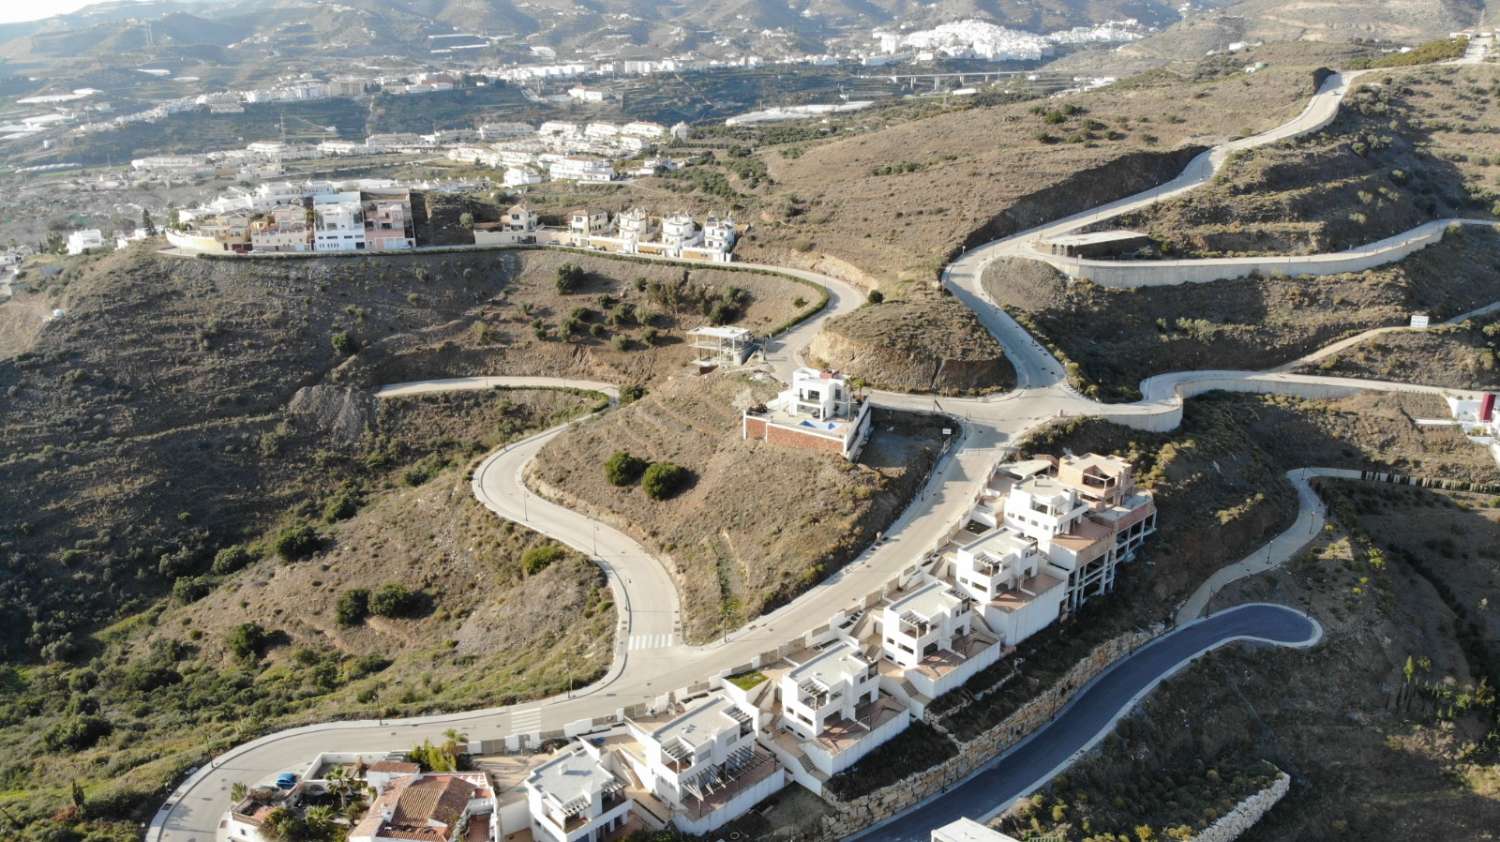 PLOT med boligprojekt i Peñoncillo-Torrox -Malaga.